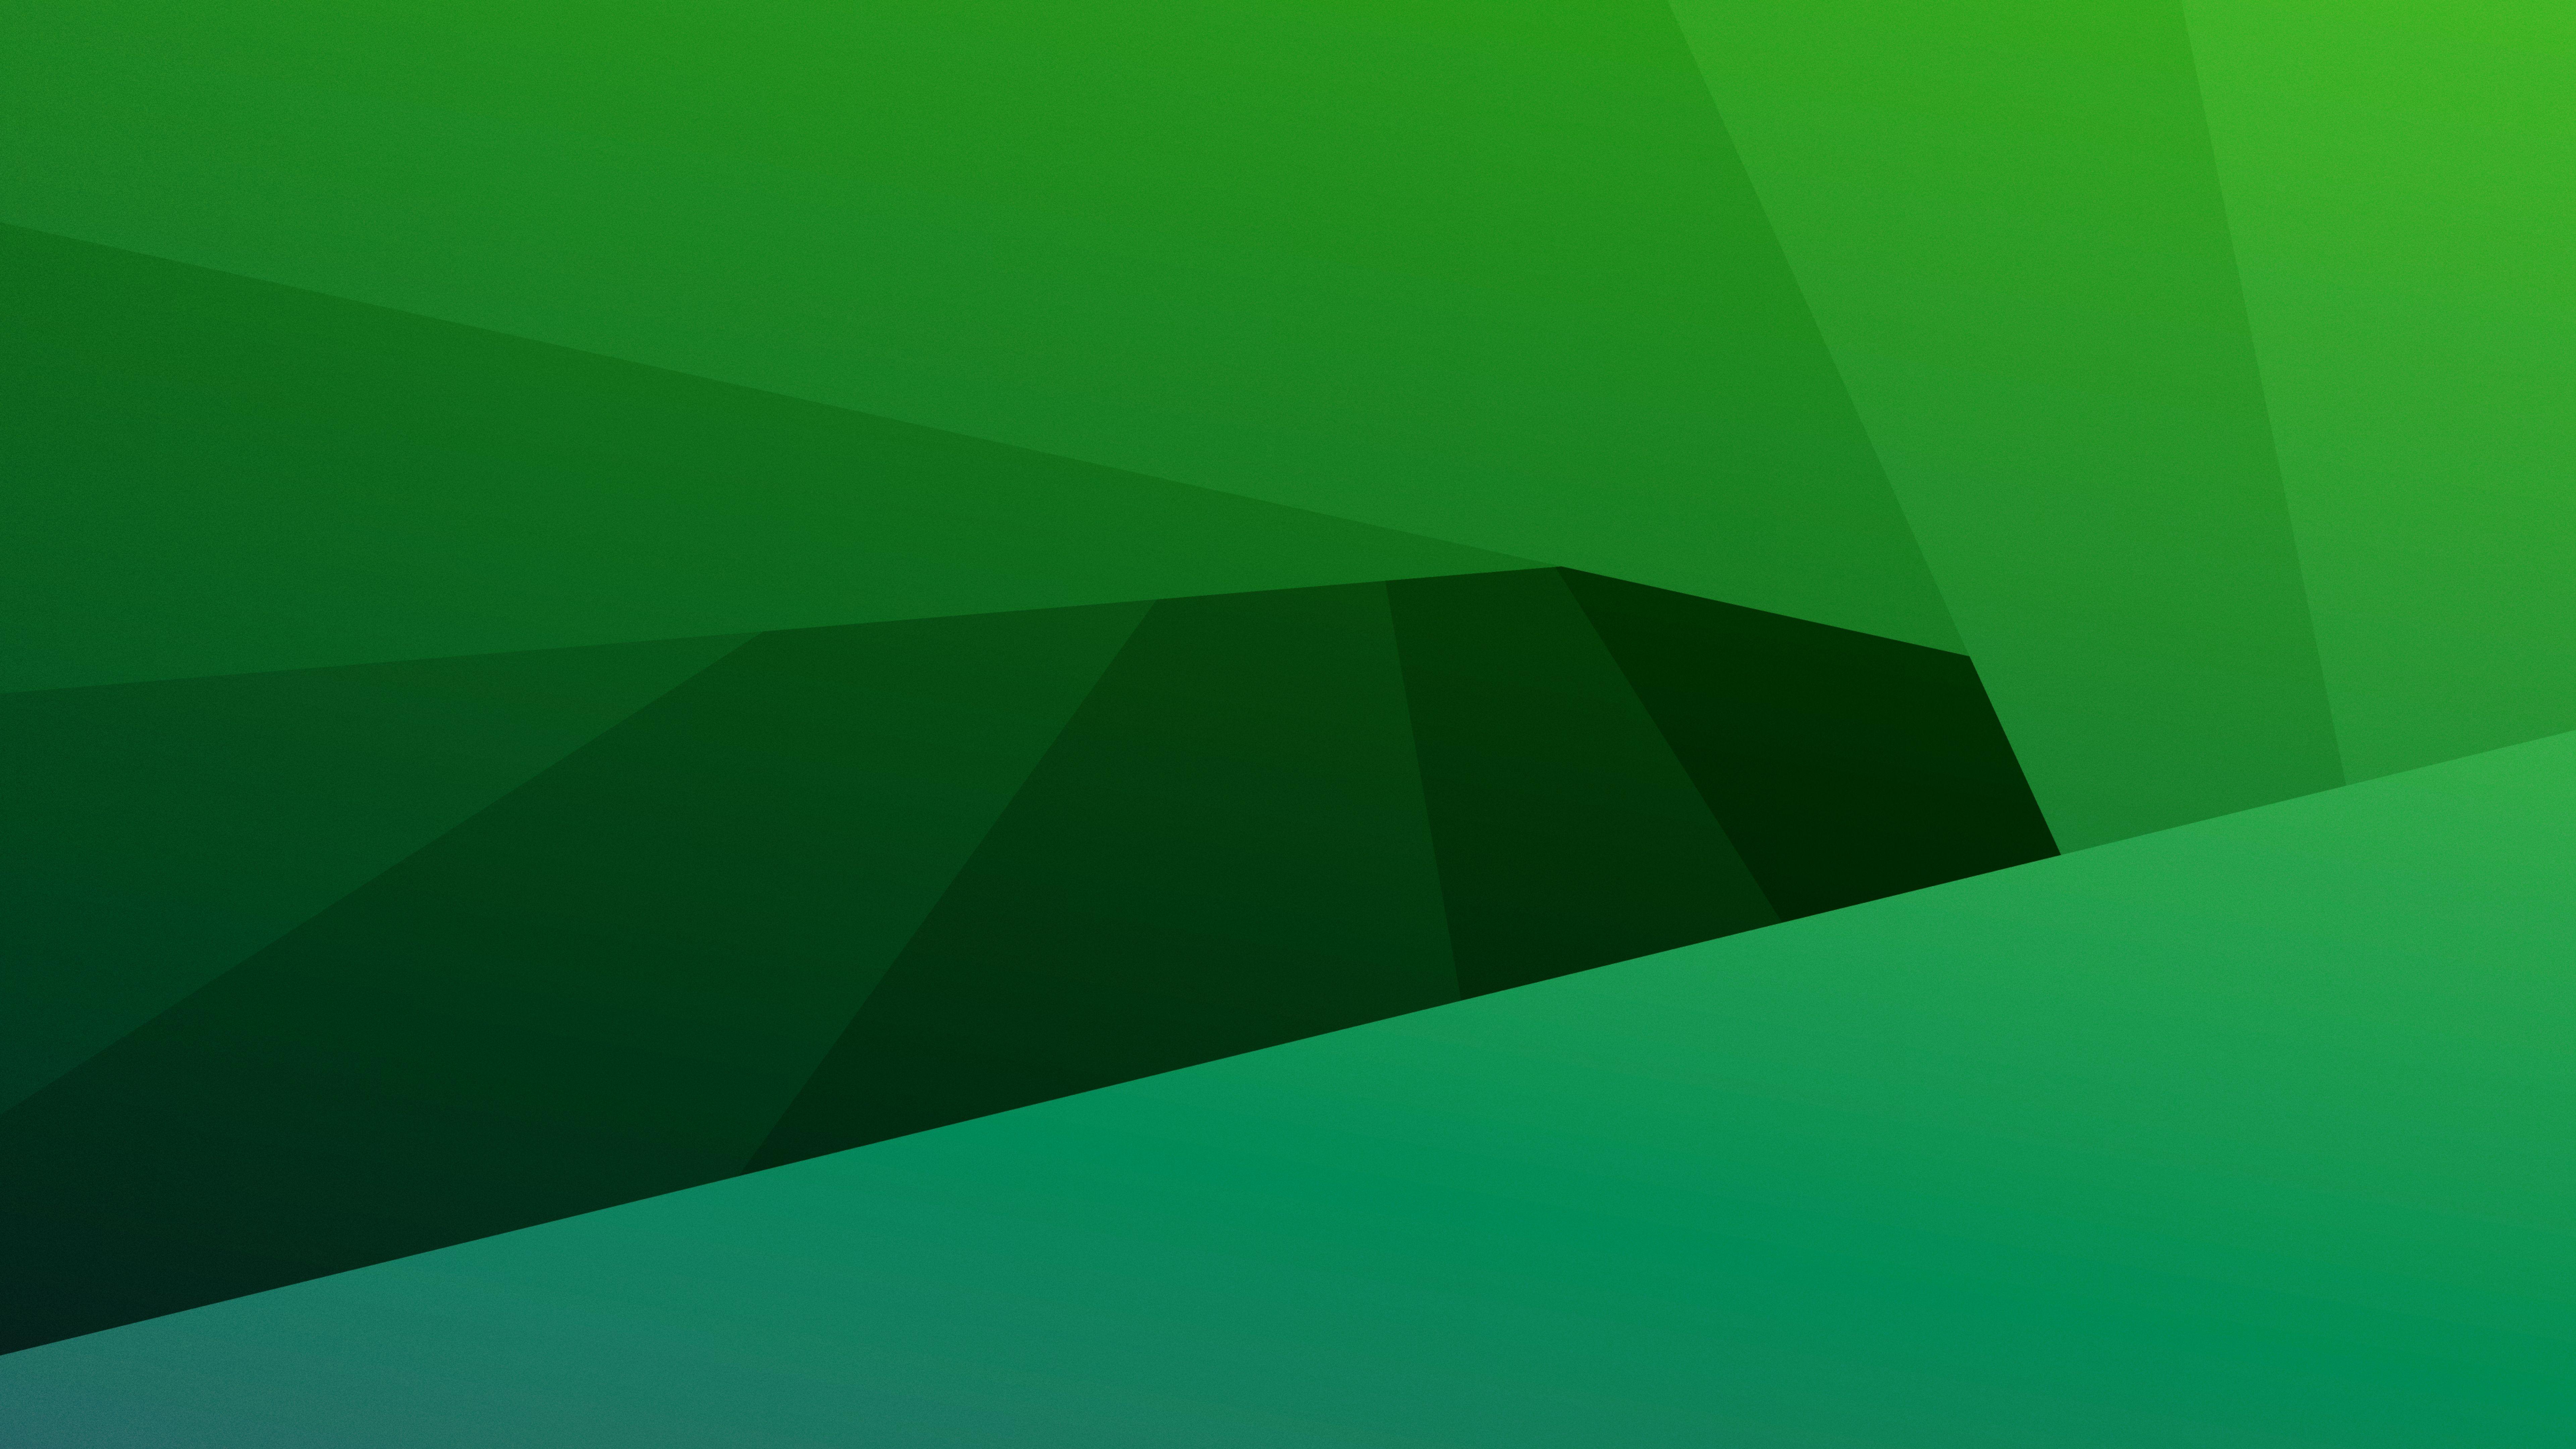 Green 8k Wallpapers - Green wallpaper: Hãy khoe cá tính của bạn với những hình nền đầy màu sắc và năng động. Với chủ đề màu xanh, hình nền sẽ tạo cho bạn cảm giác tươi trẻ, sáng tạo, và gần gũi với thiên nhiên. Hãy tải ngay những hình nền 8k này và đắm mình trong một không gian sống đầy màu sắc.